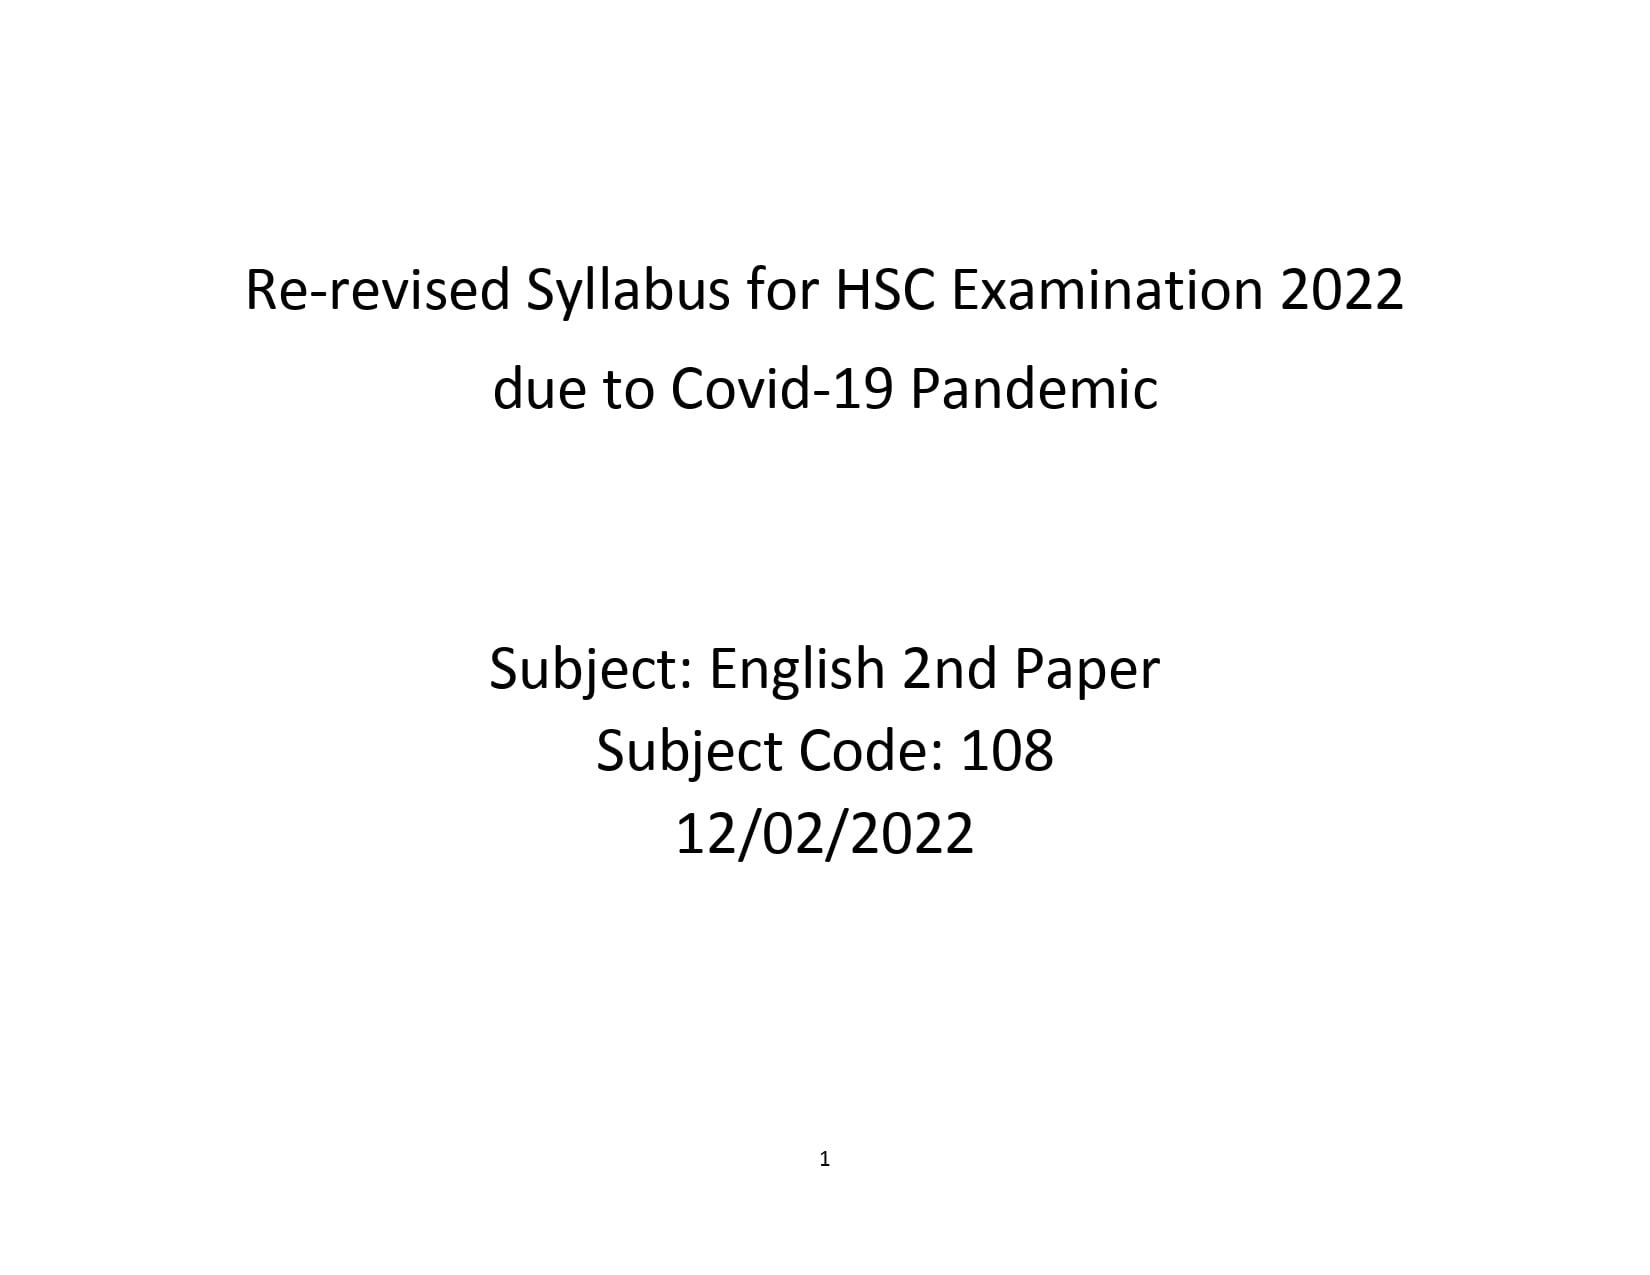 English 2nd Paper - HSC Short Syllabus 2022